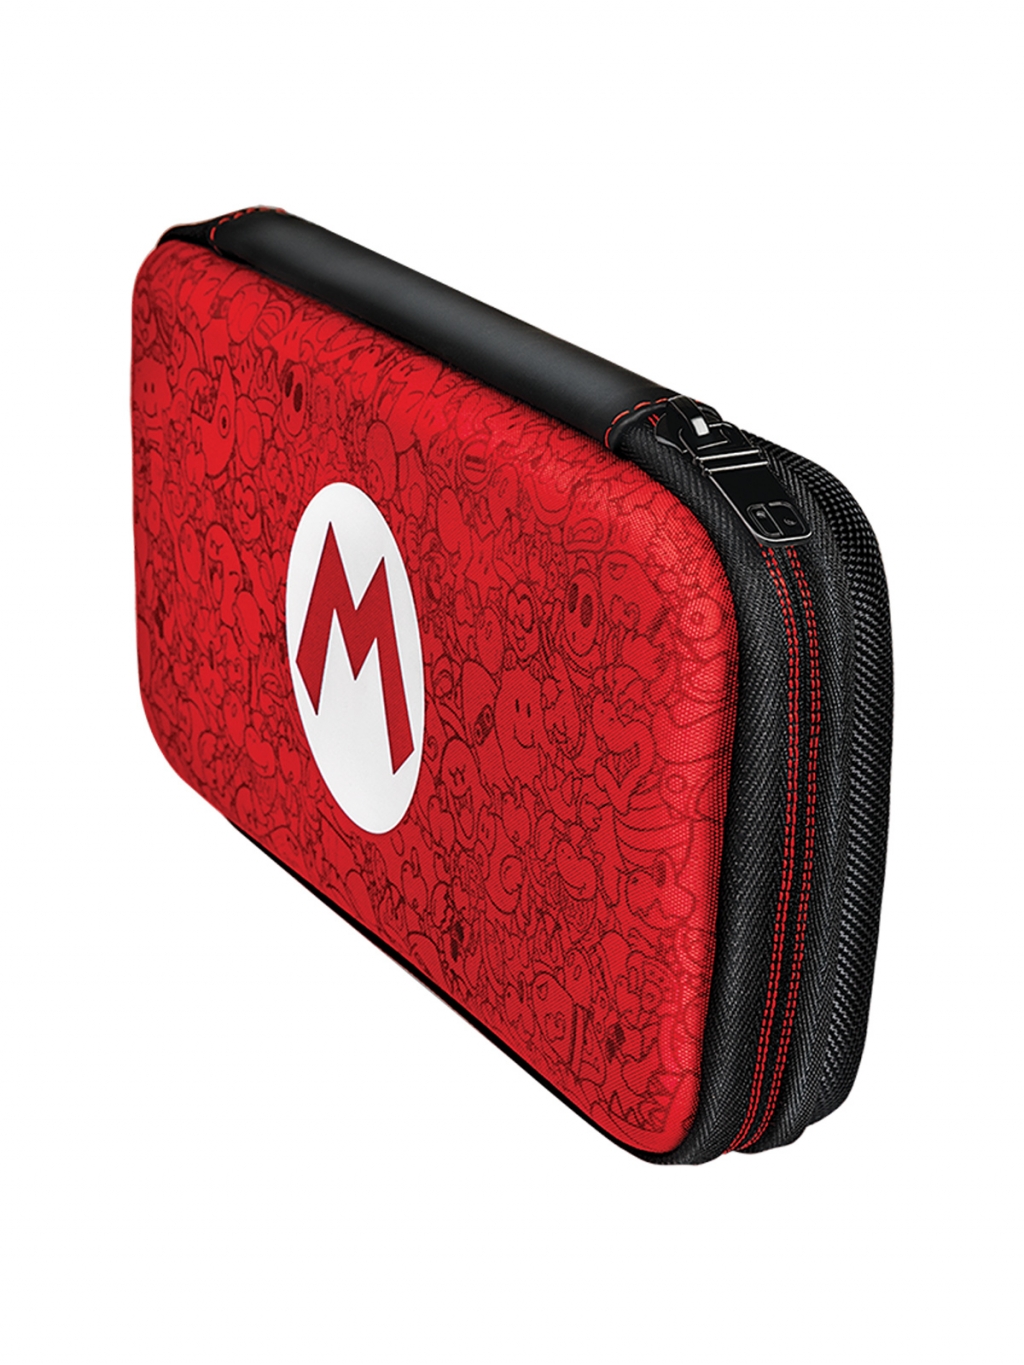 Чехол PDP Mario Remix для Nintendo Switch, набор аксессуаров, красный (0708056064143)